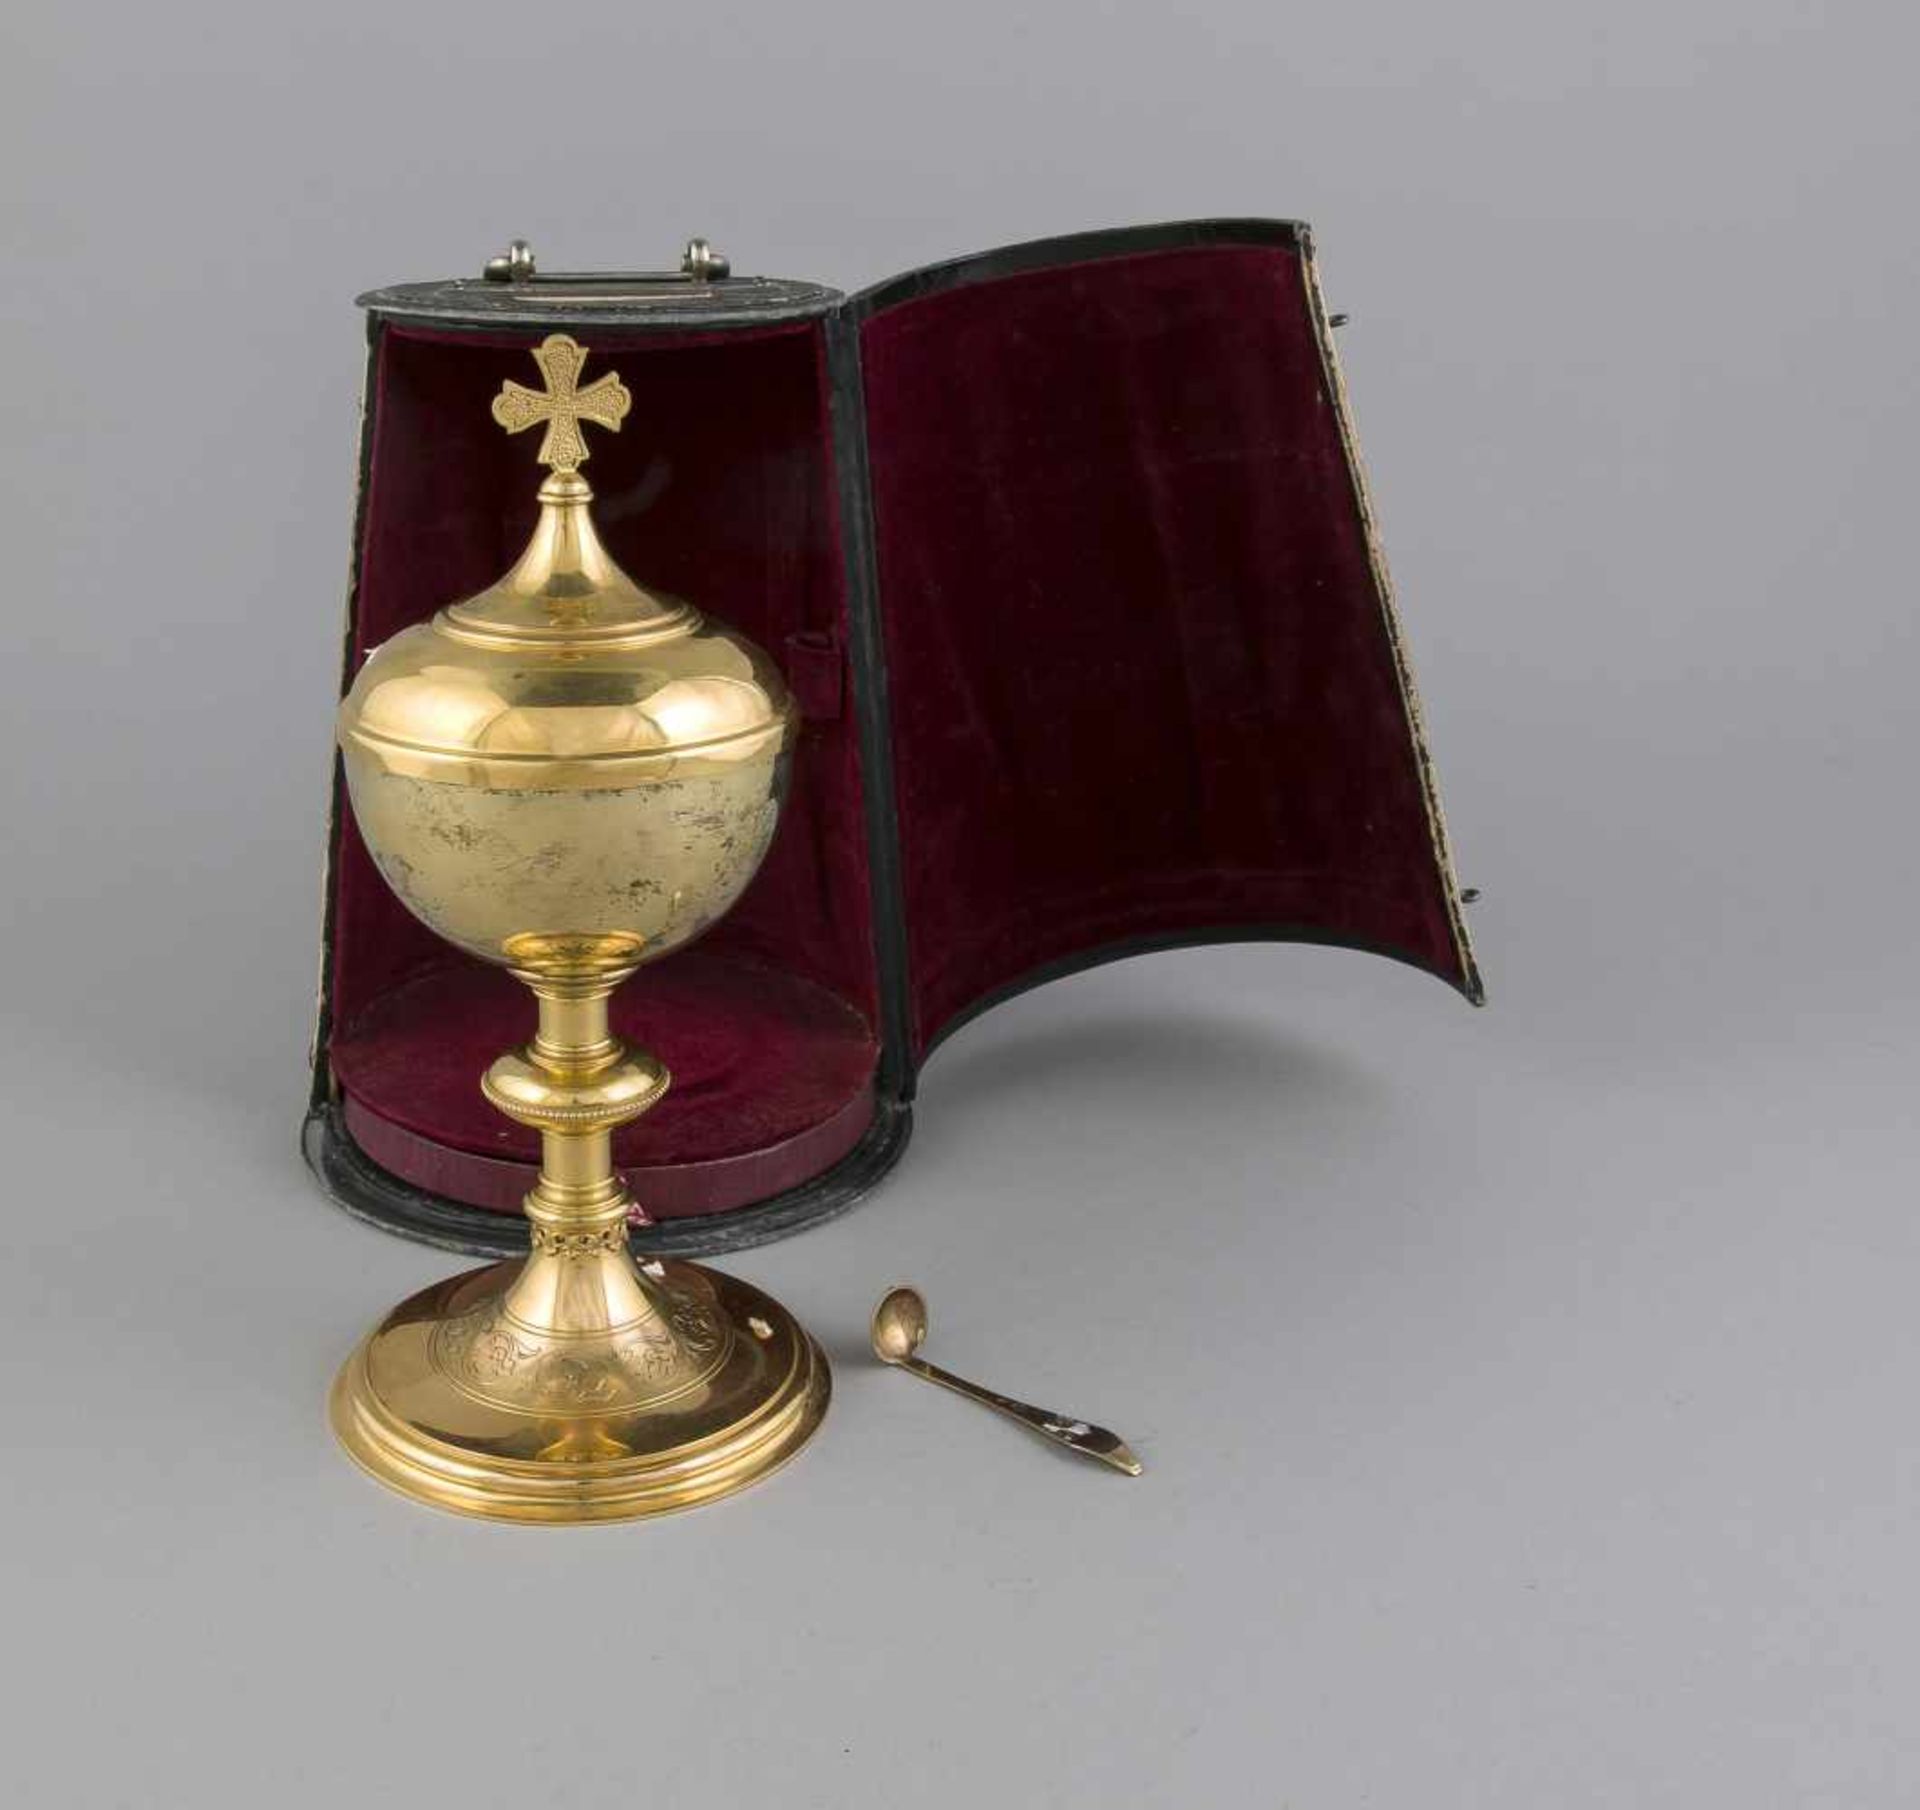 Messkelch mit Deckel, 20. Jh., Silber 800/000 (niederl. Prüfpunze), vergoldet, runder gewölbter